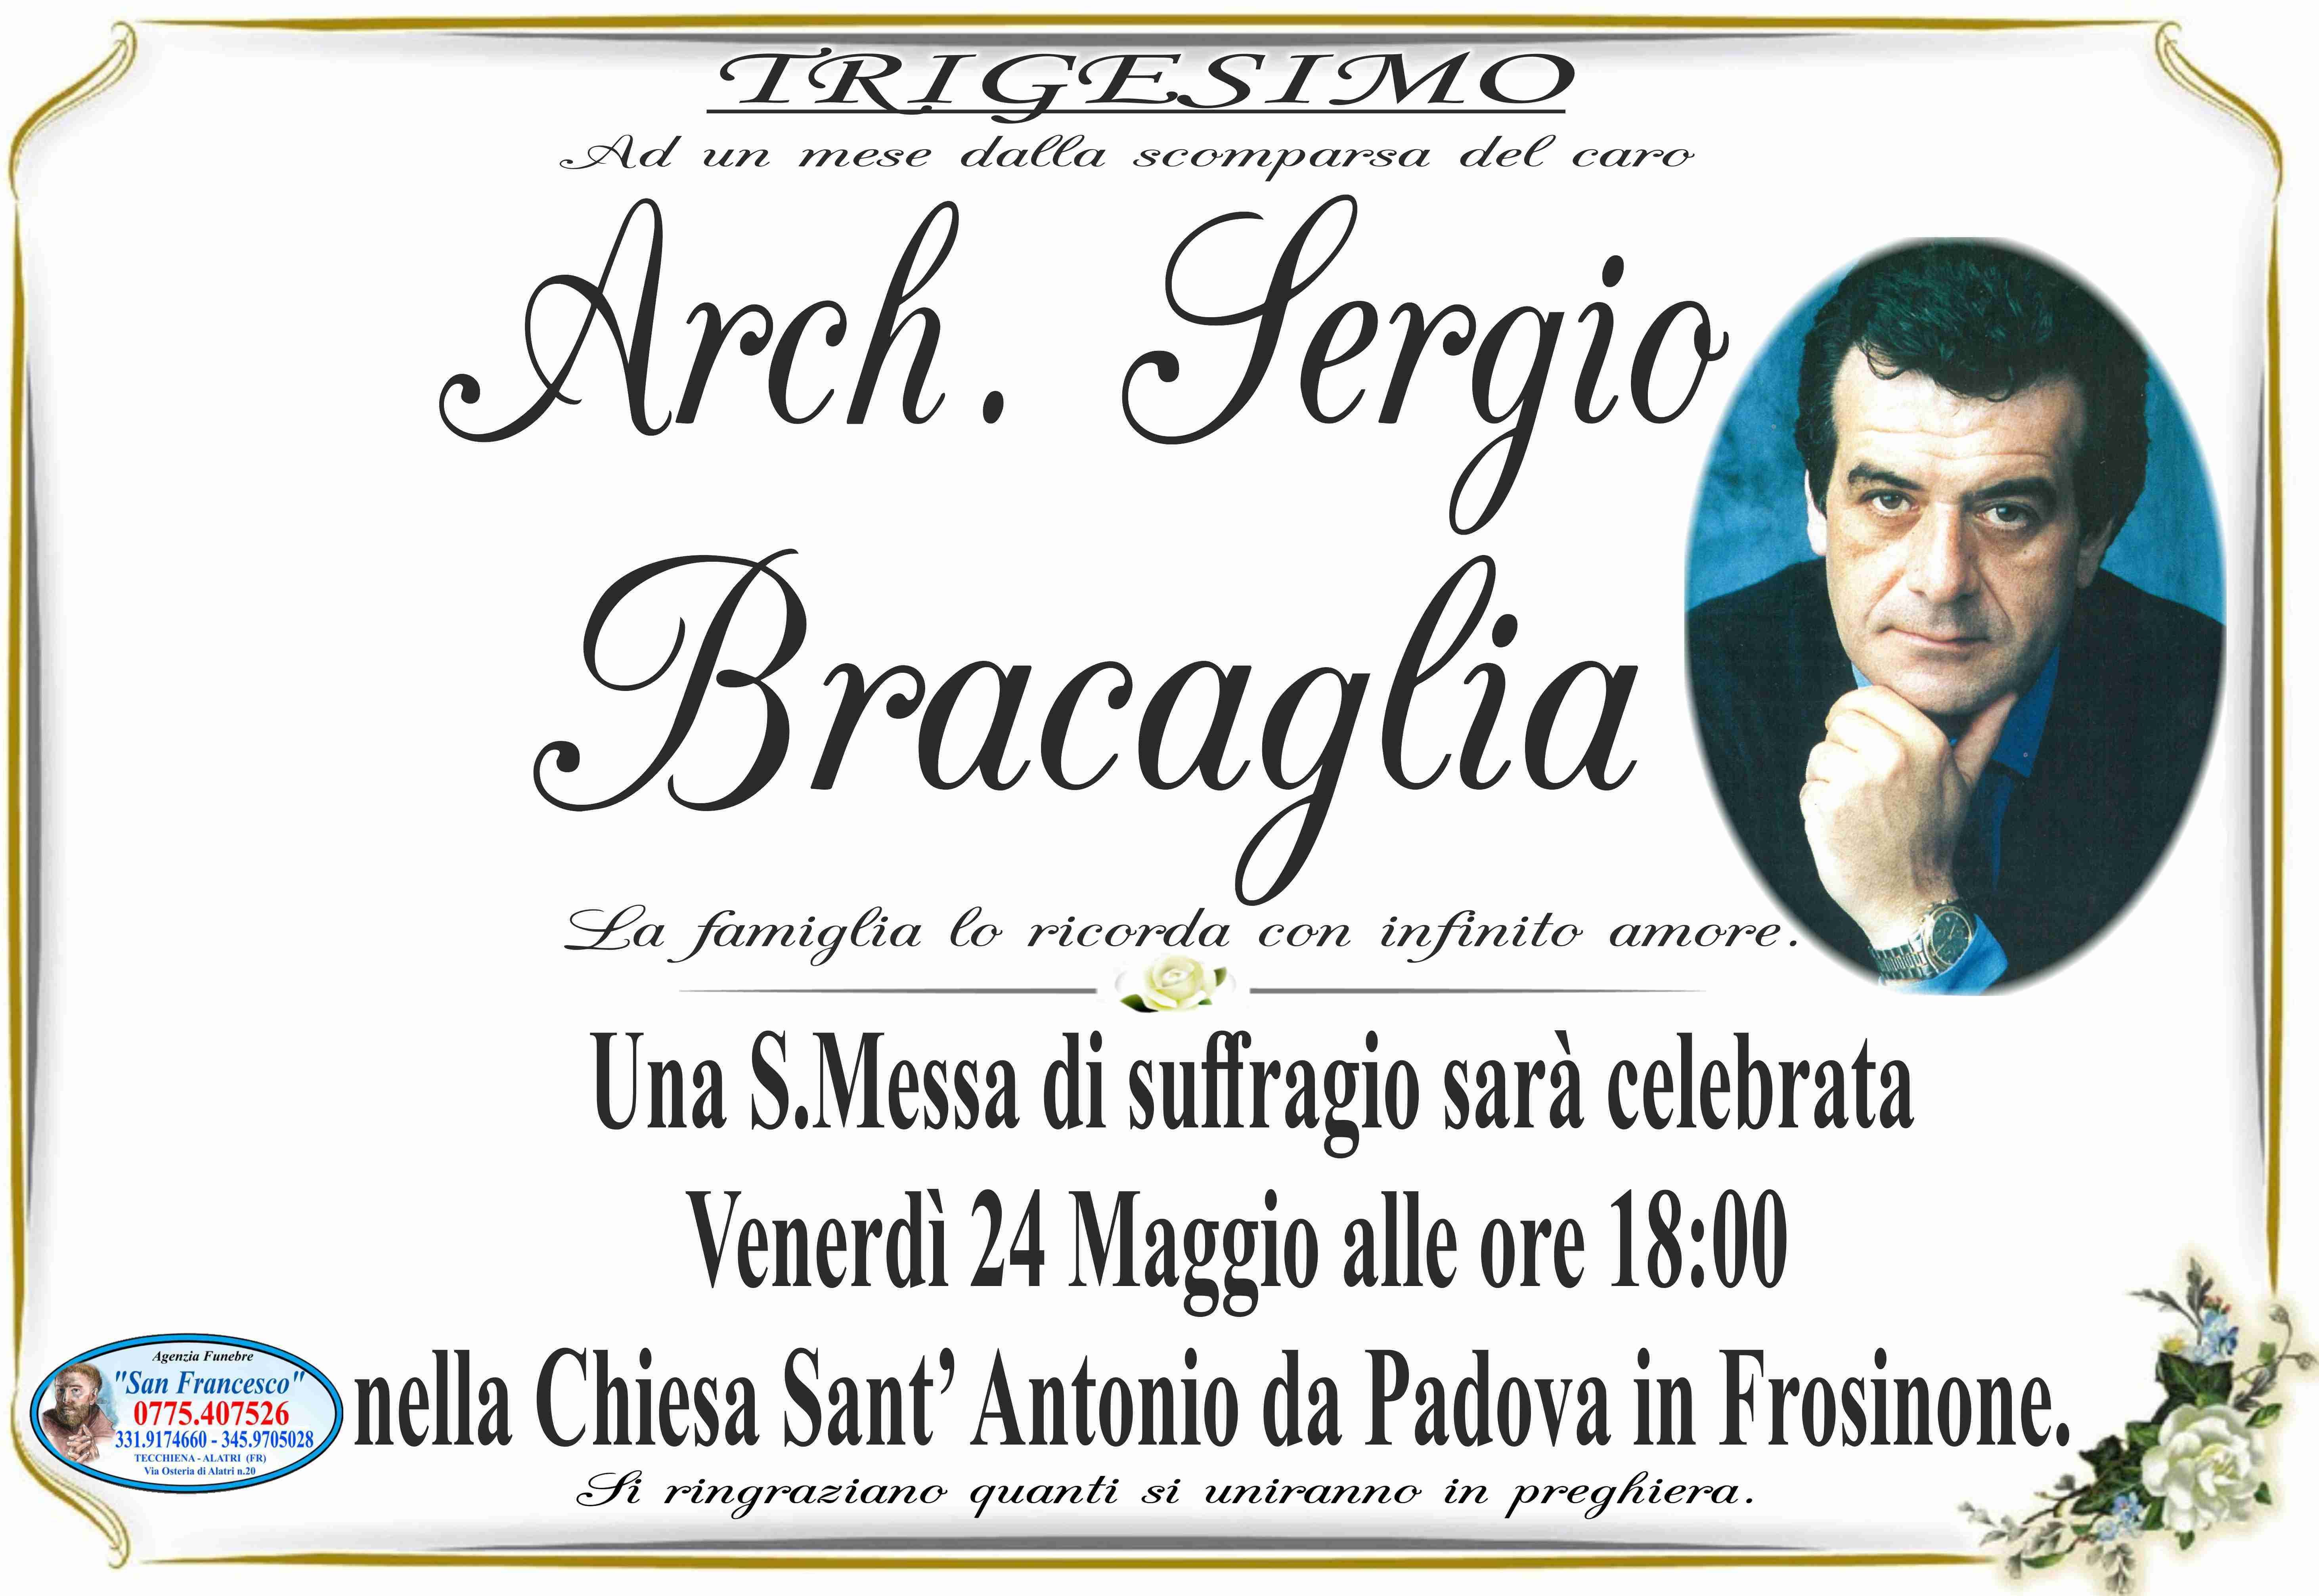 Arch. Sergio Bracaglia